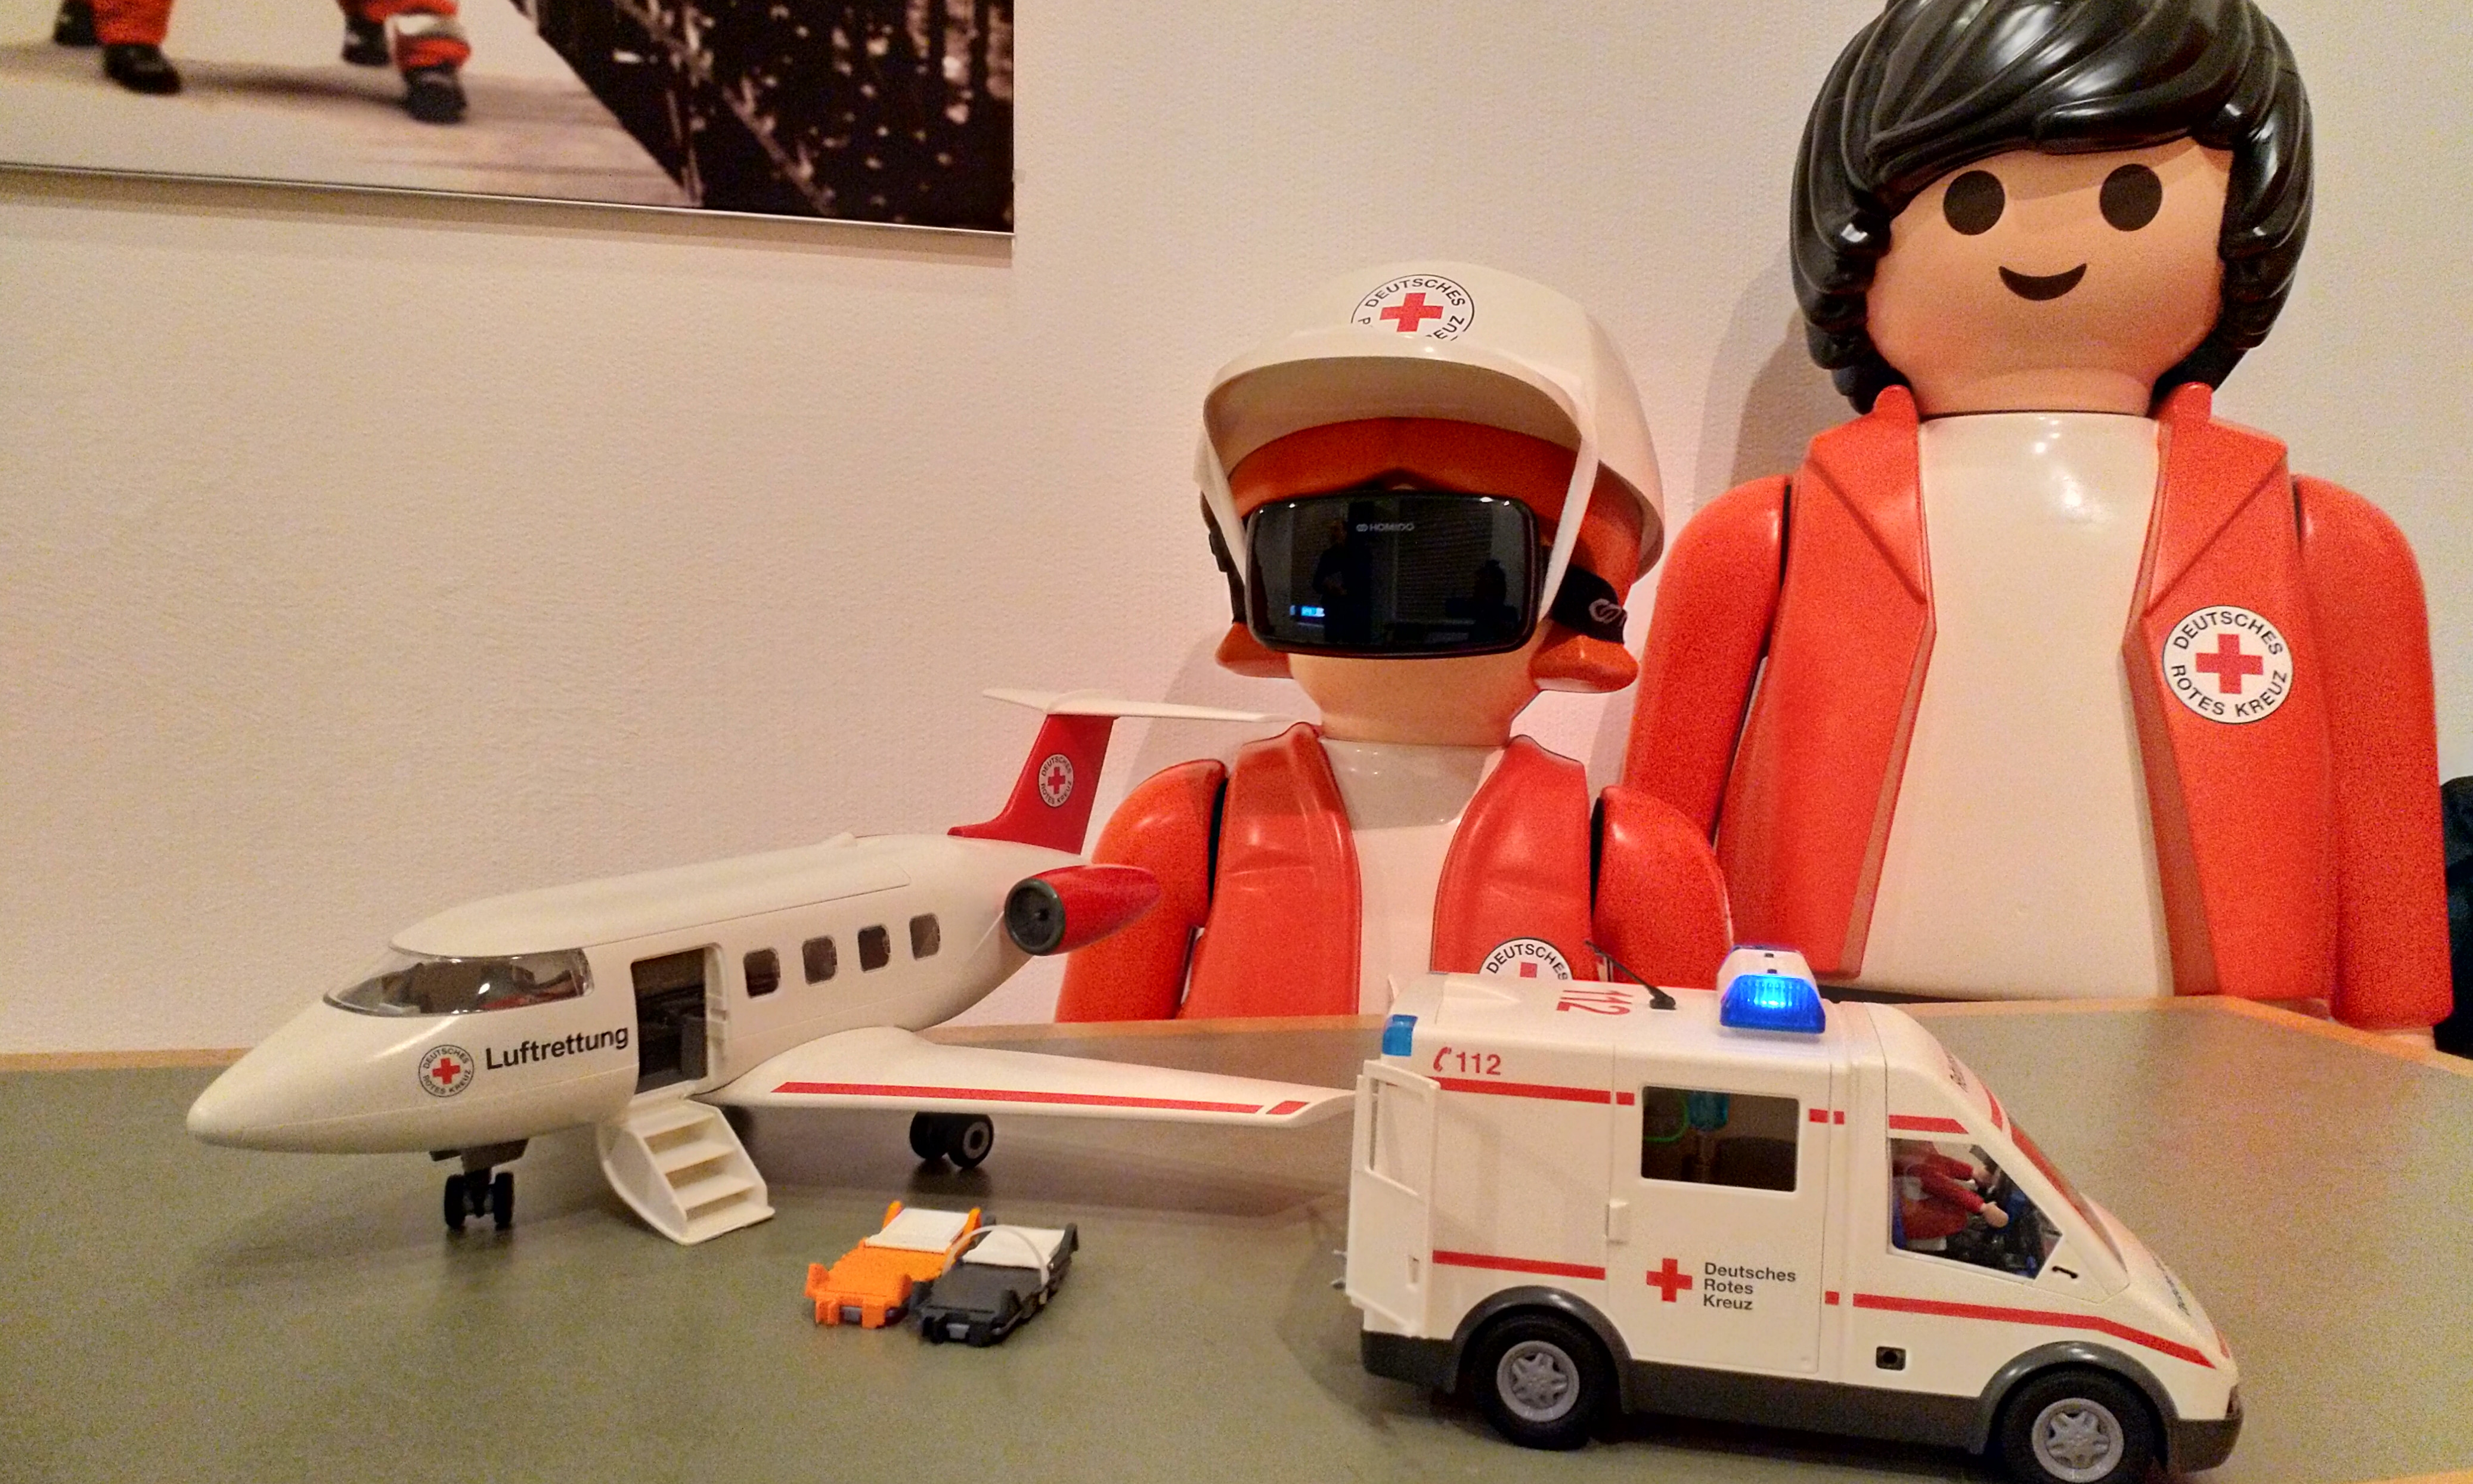 Zwei größe Playmobil-DRK-Figuren stehn vor einem kleinem Playmobil-DRK-Flugzeug und DRK-Rettungswagen.